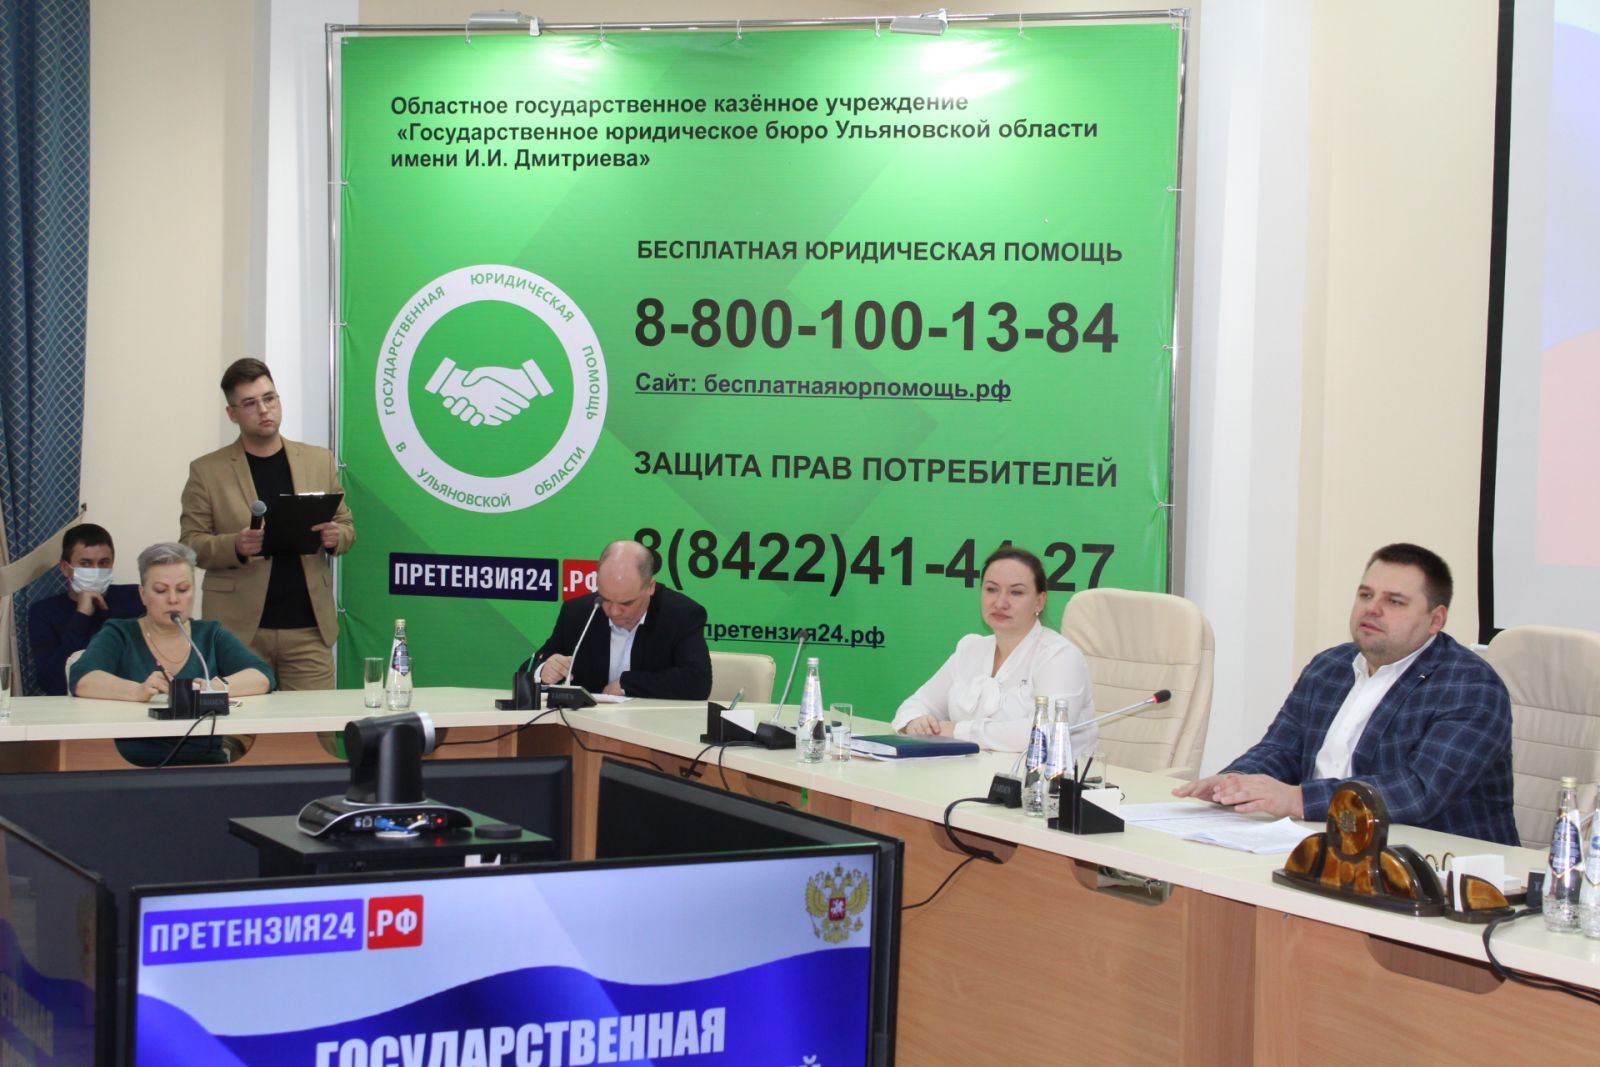 Ульяновские юристы обсудили особенности защиты прав потребителей во время пандемии